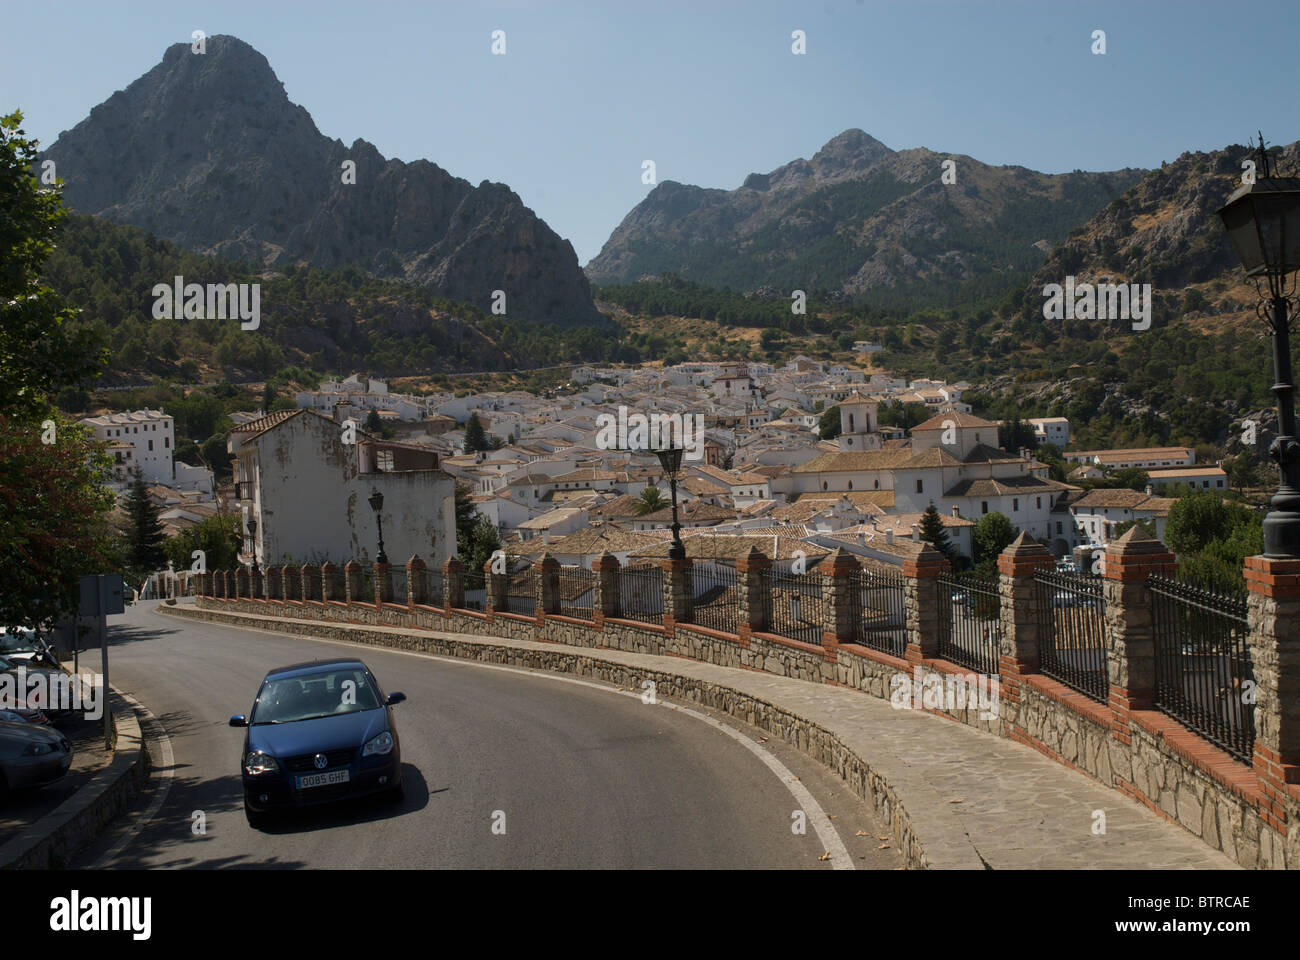 España, Andalucía, Grazalema, coche moviéndose en la carretera con el pueblo y las montañas en el fondo Foto de stock